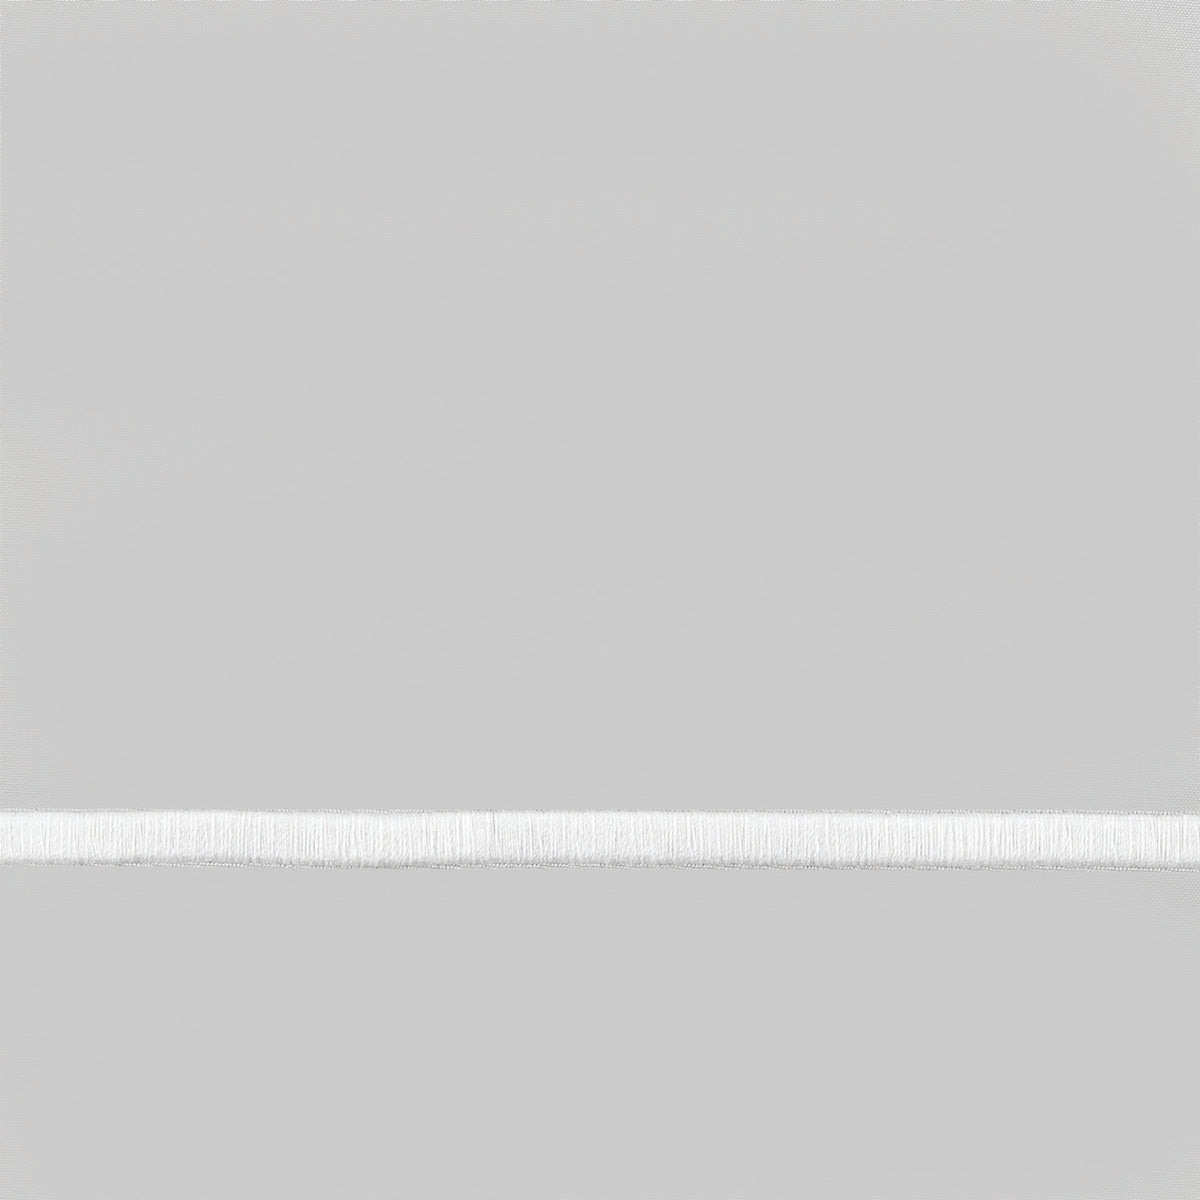 Matouk Bergamo Satin Stitch Bedding Swatch White/Silver Fine Linens